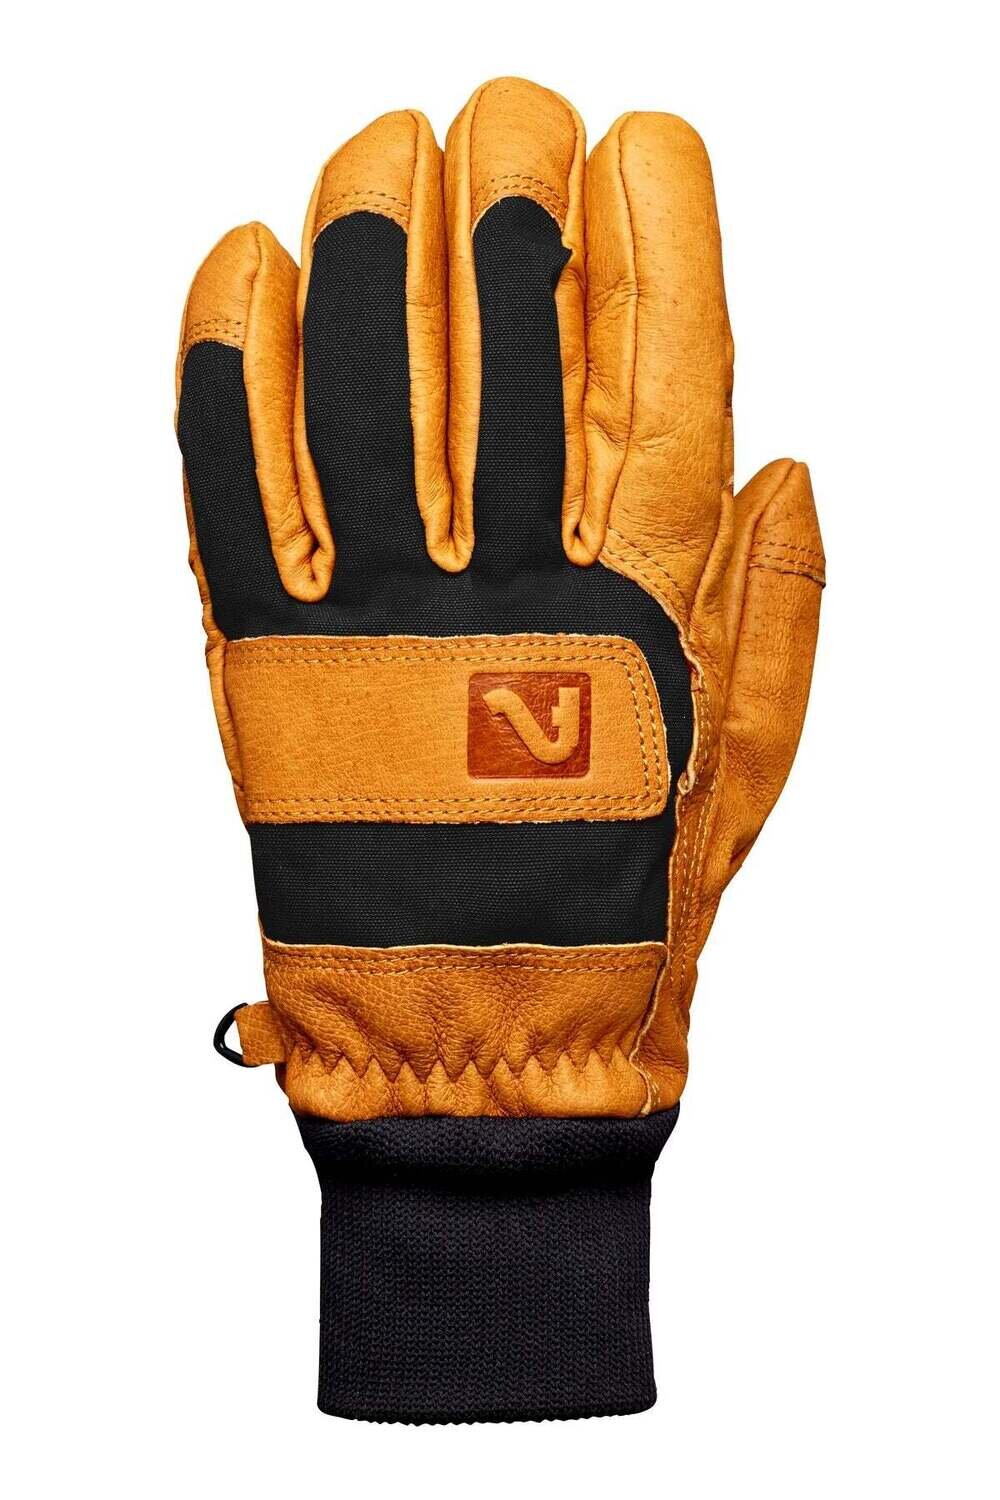 Flylow Gear Magarac Glove